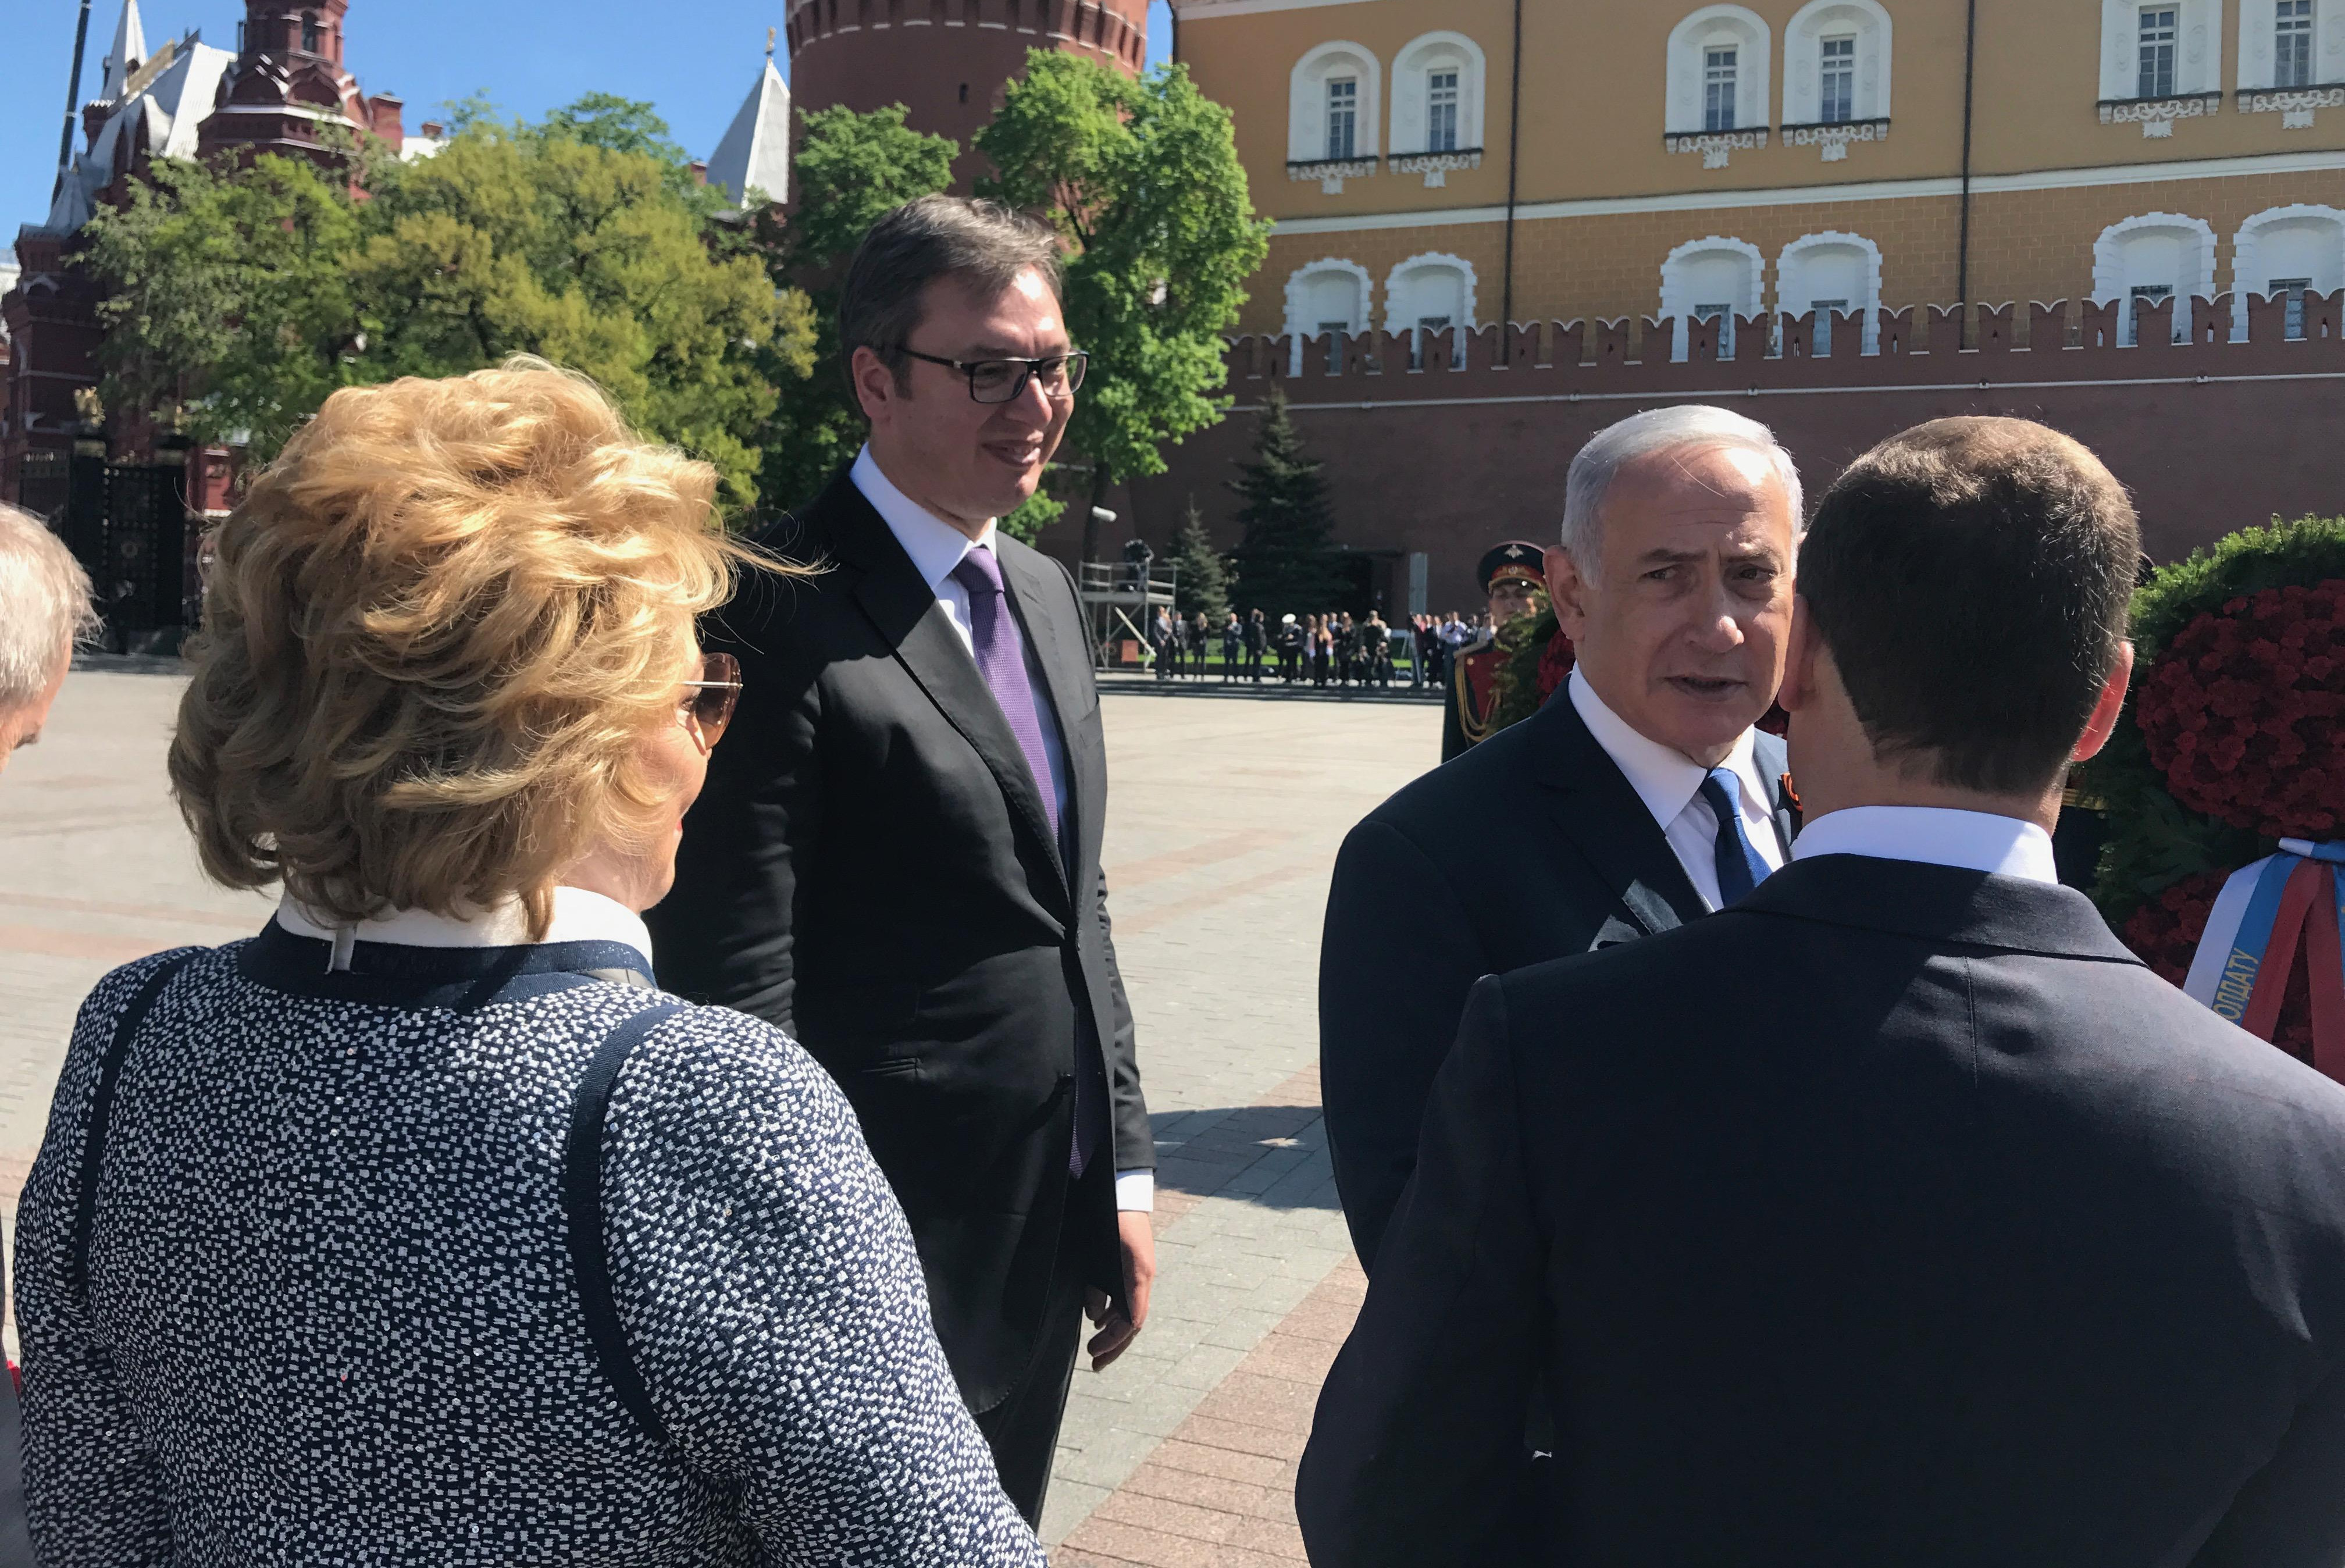 (FOTO) U ELITNOM DRUŠTVU! Vučić razgovarao sa Medvedevom, Šojguom, Lavrovom, Matvijenko...